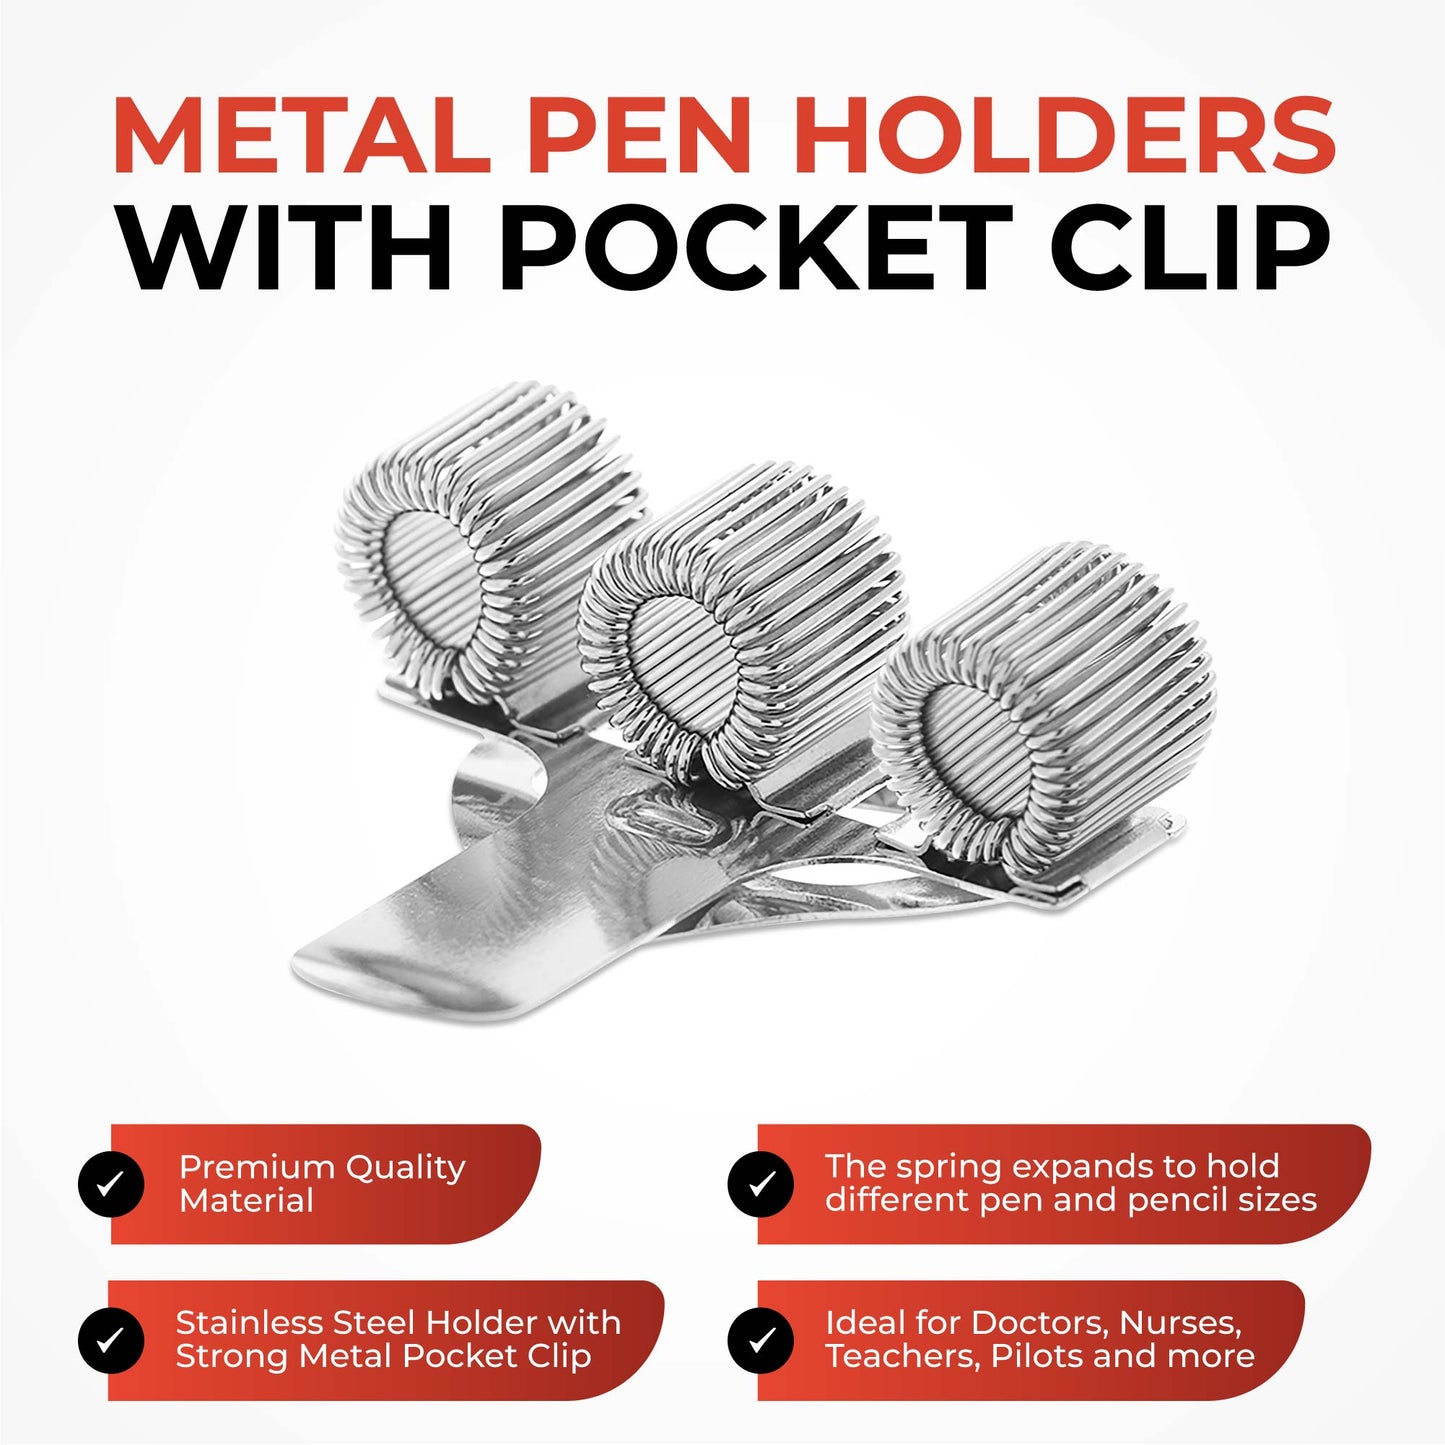 Triple Hole Metal Pen Holder With Pocket Clip - Doctors, Nurse, Uniform etc